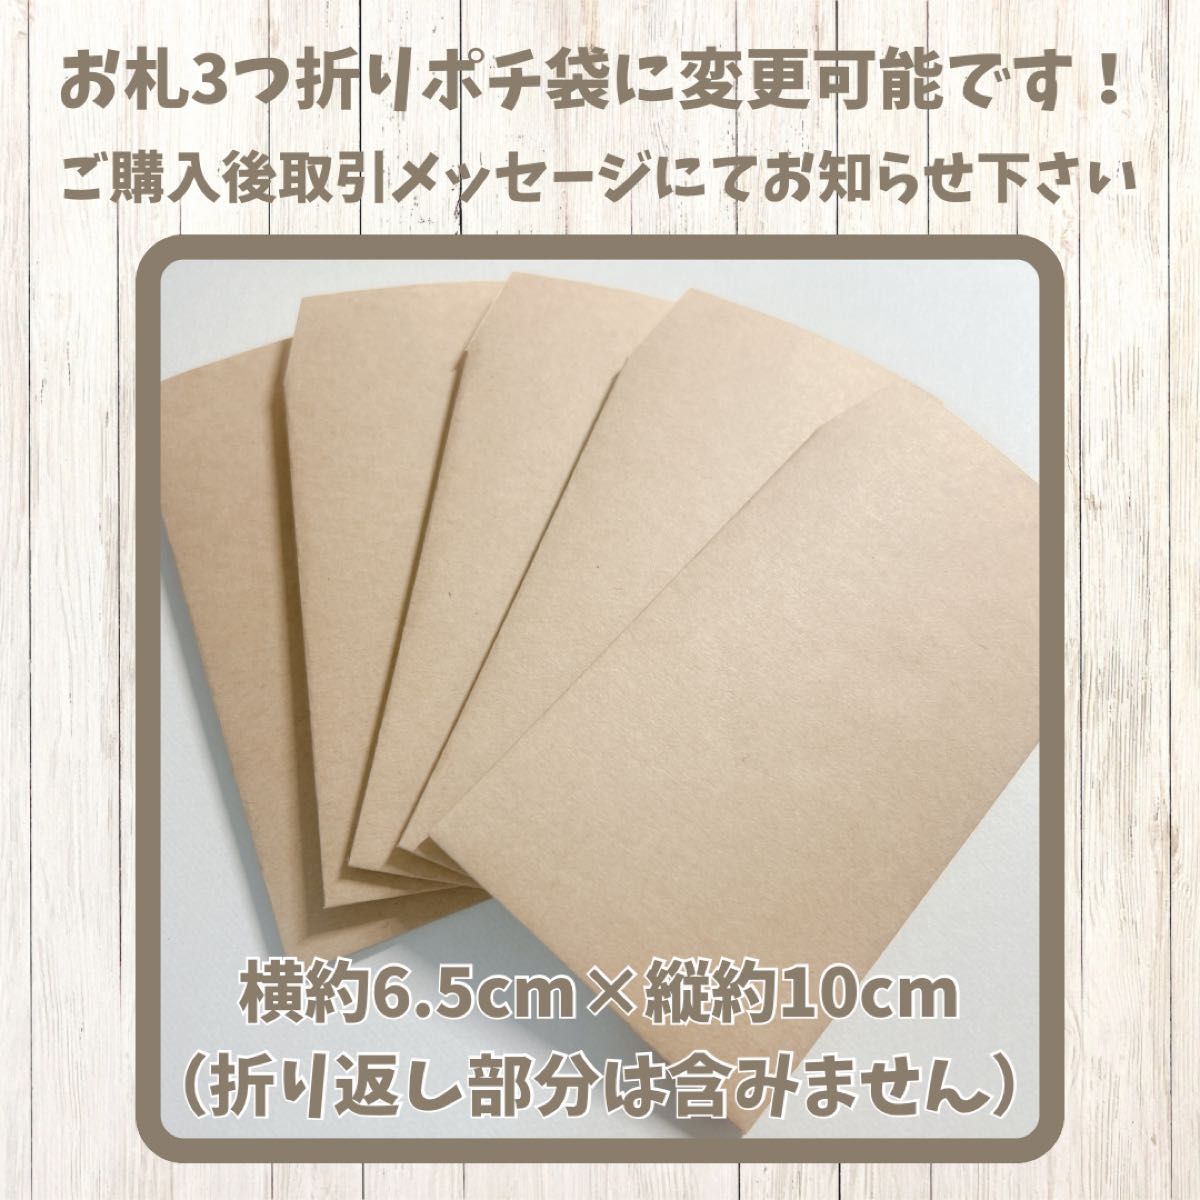 【NO.34】ましかく封筒 封筒 ポチ袋 平袋 40枚 パンダ 花柄